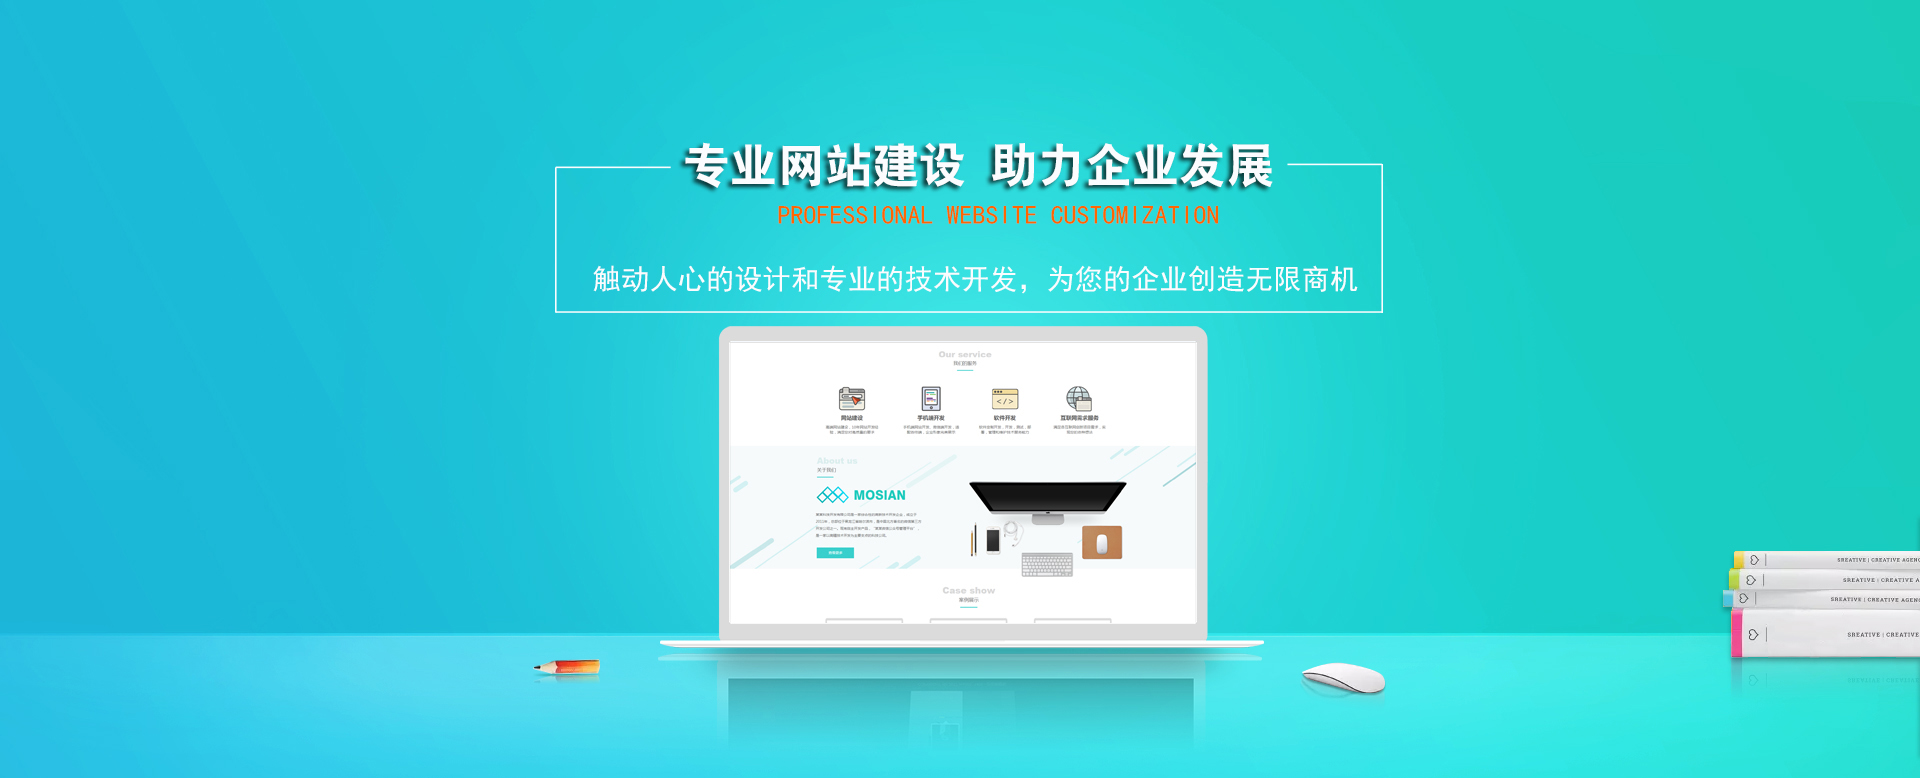 上海網站建設|上海網站制作|上海建網站公司|上海網站設計|上海網站優化|上海SEO|上海關鍵詞排名|上海小程序開發